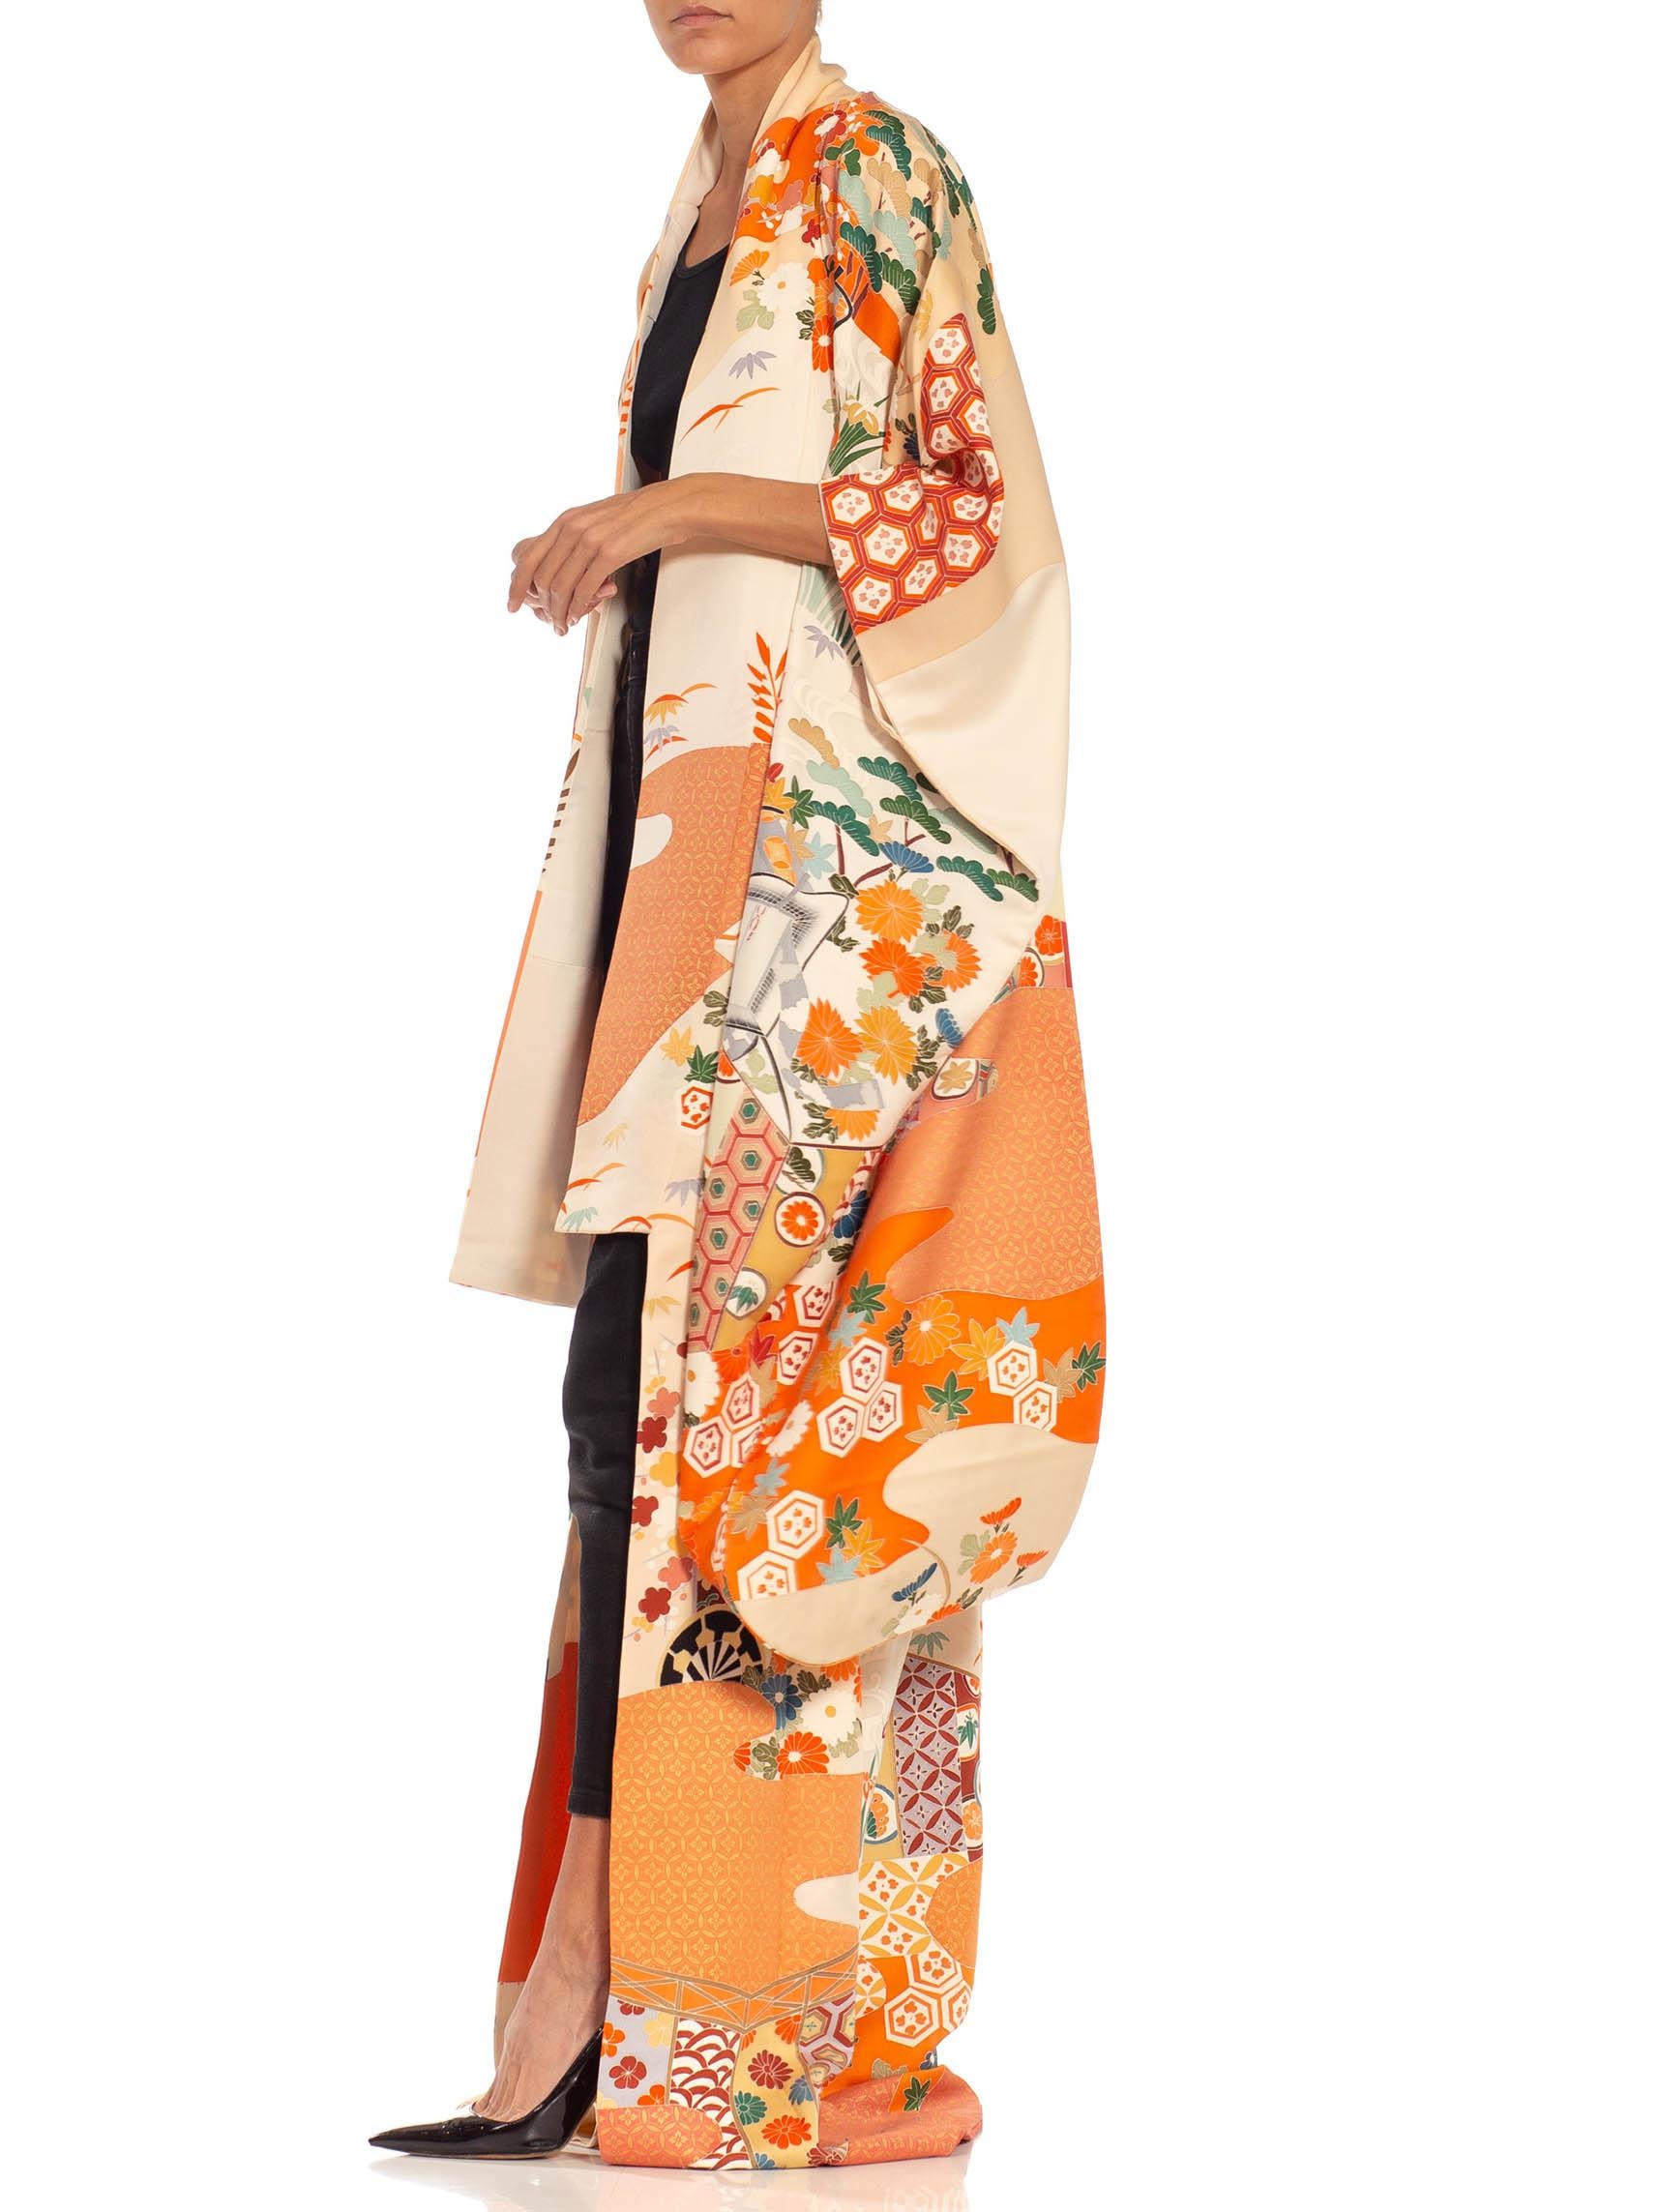 Orange & Cream Multicolored Hand Painted Silk Kimono For Sale 3